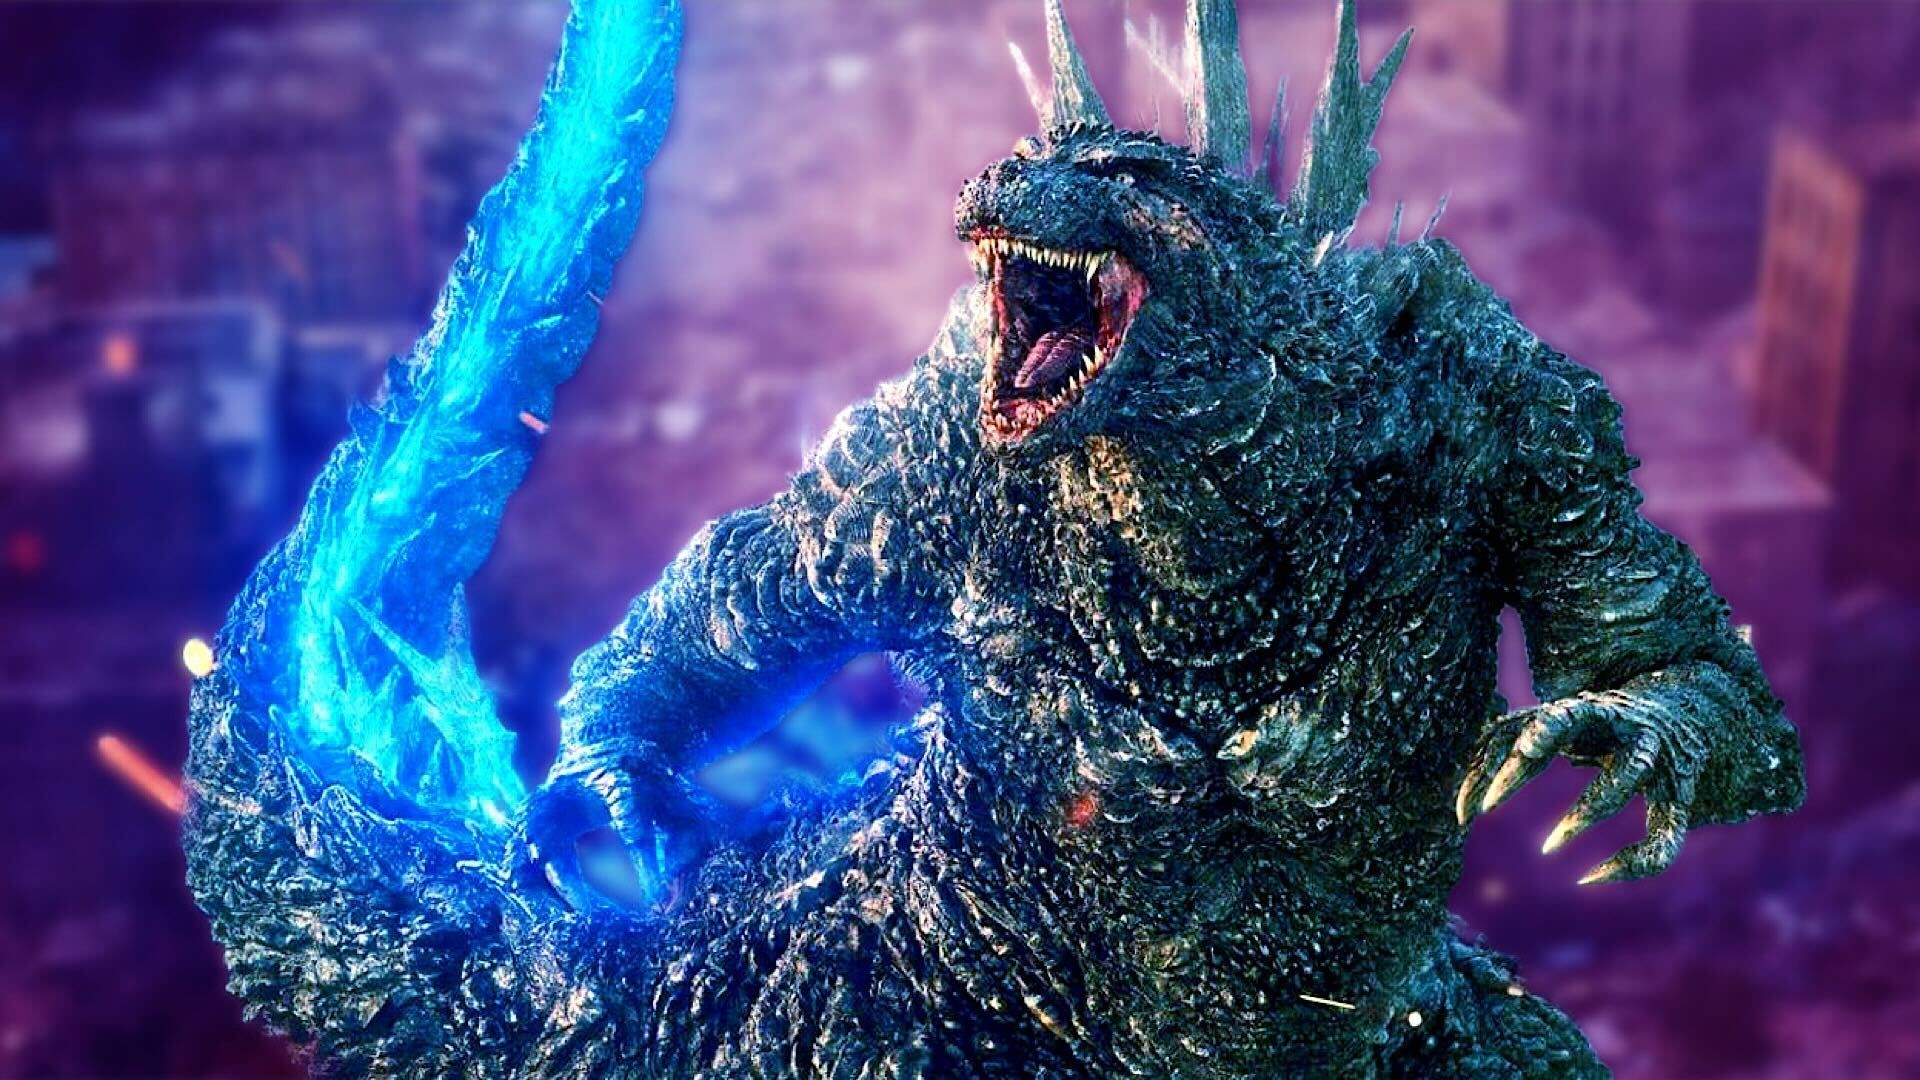 A recolored image of Godzilla Minus One